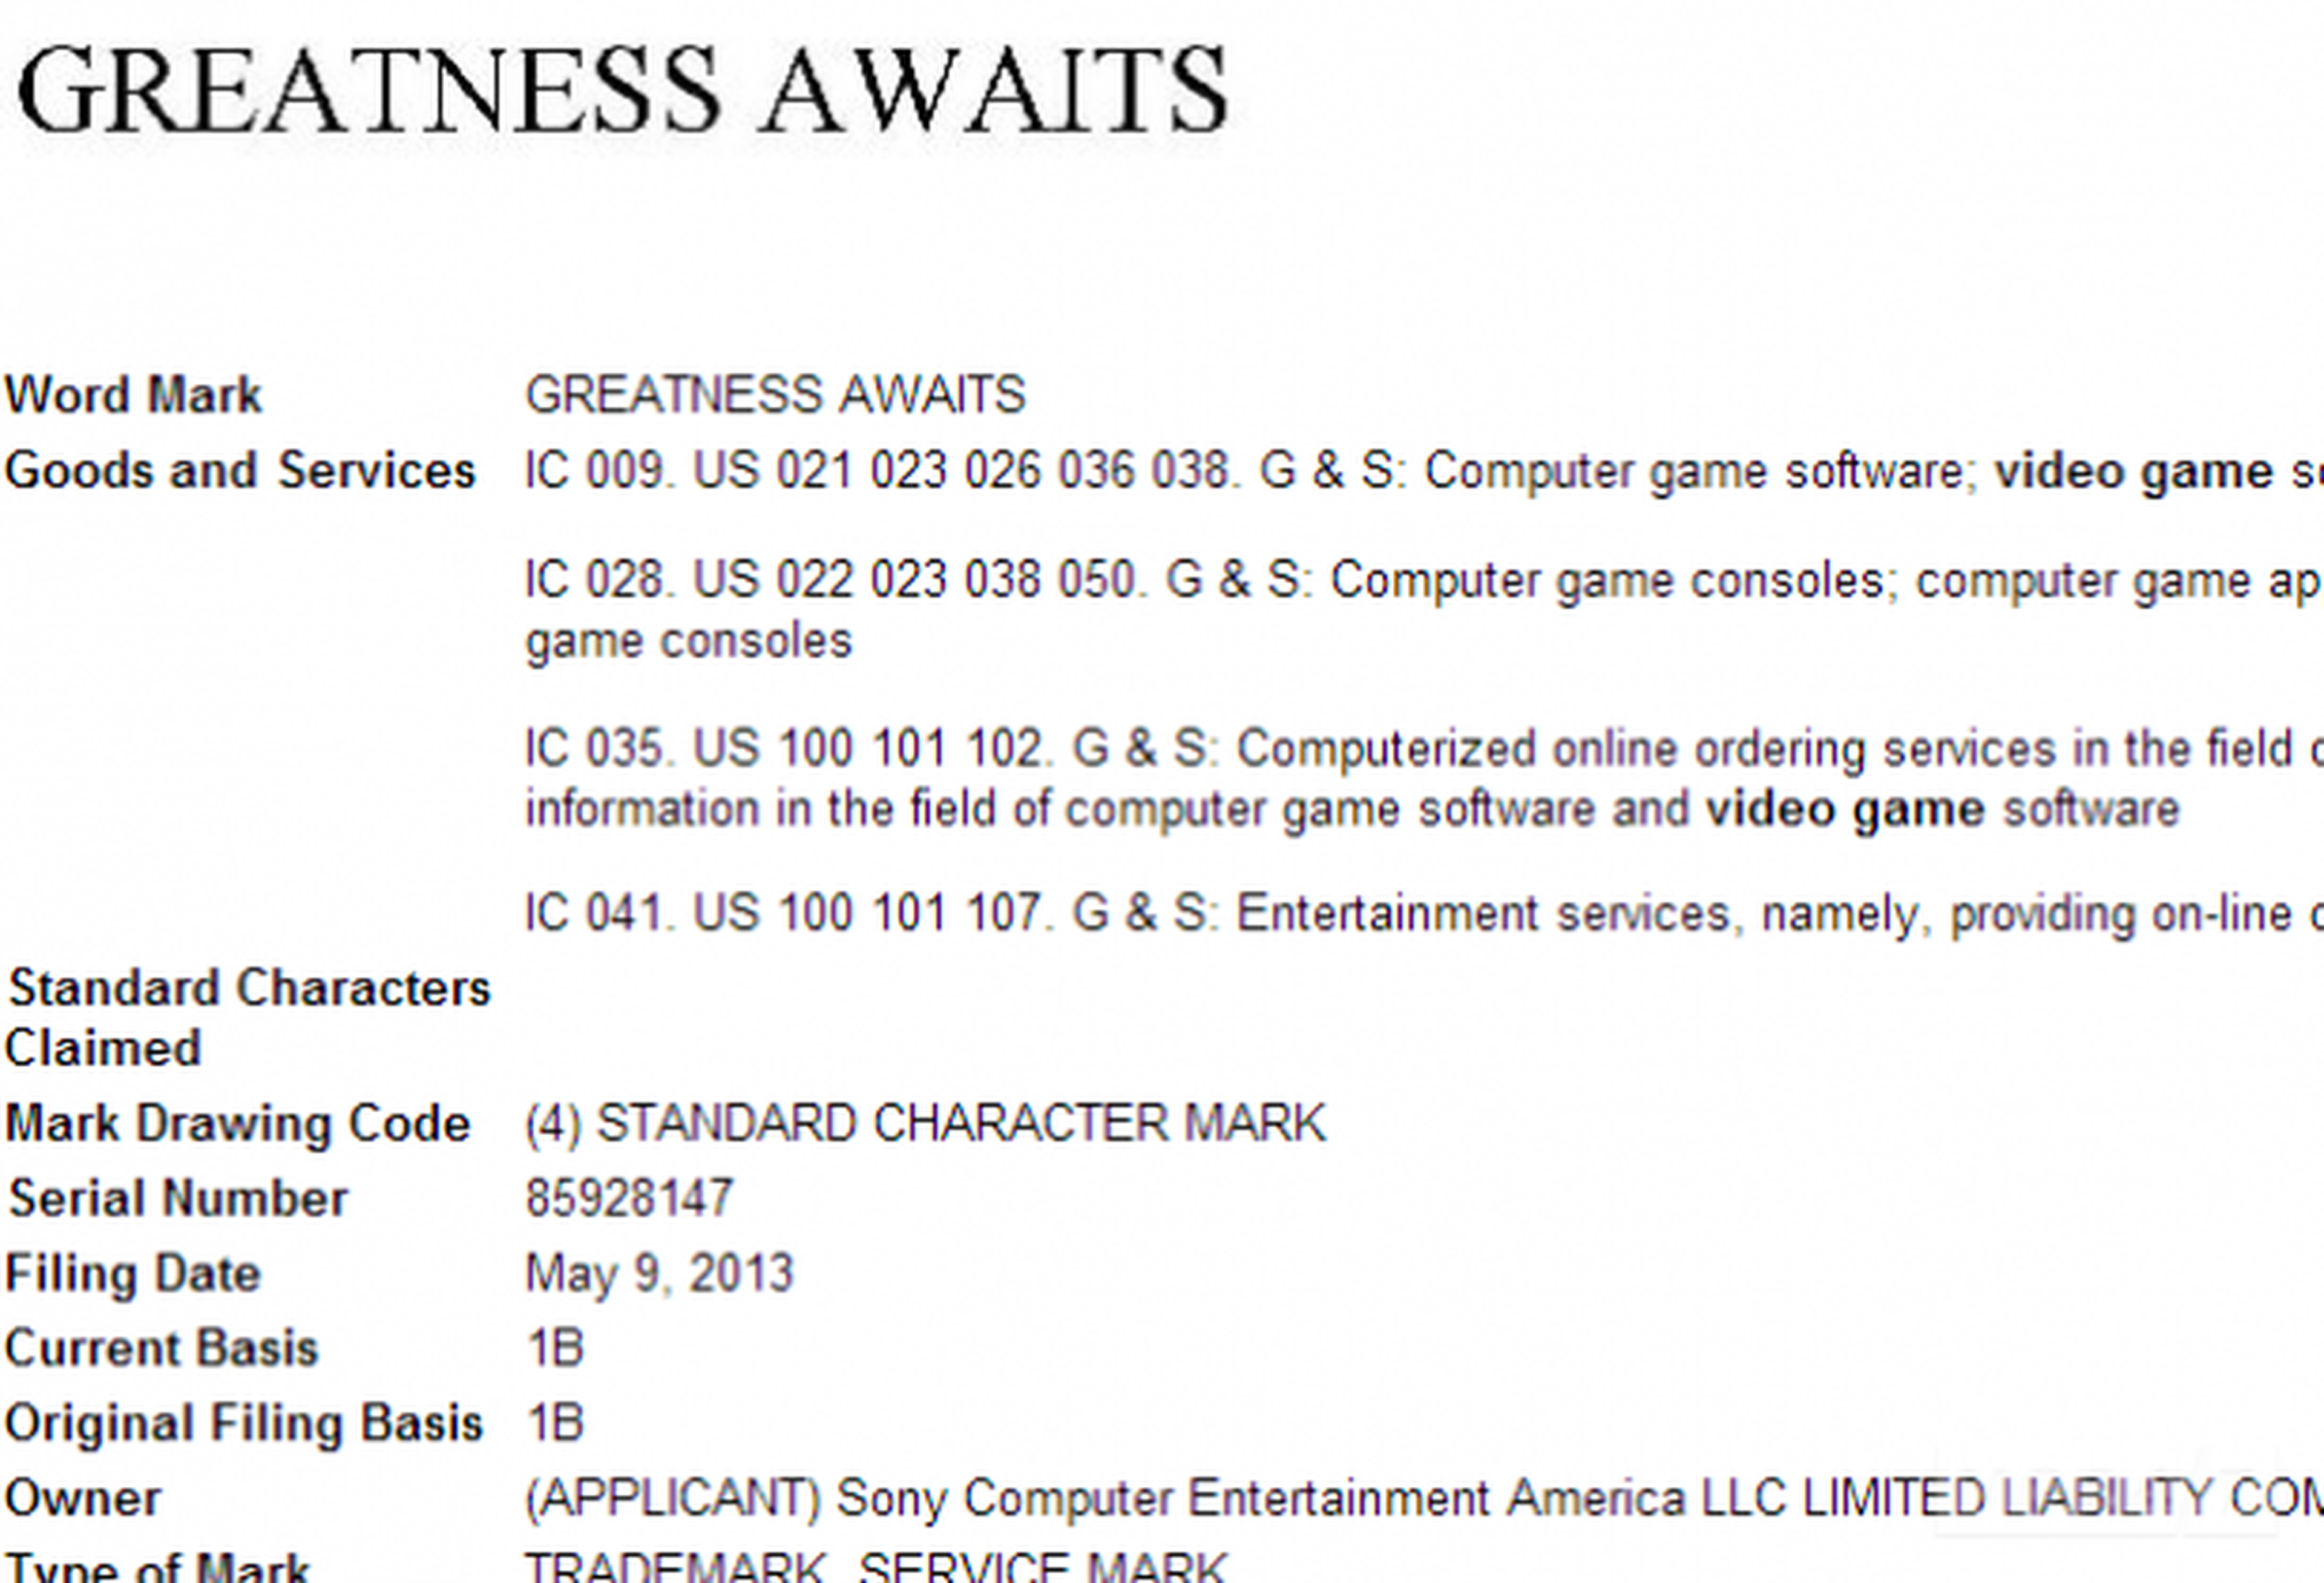 "La grandeza aguarda", ¿el slogan de Sony para PS4?